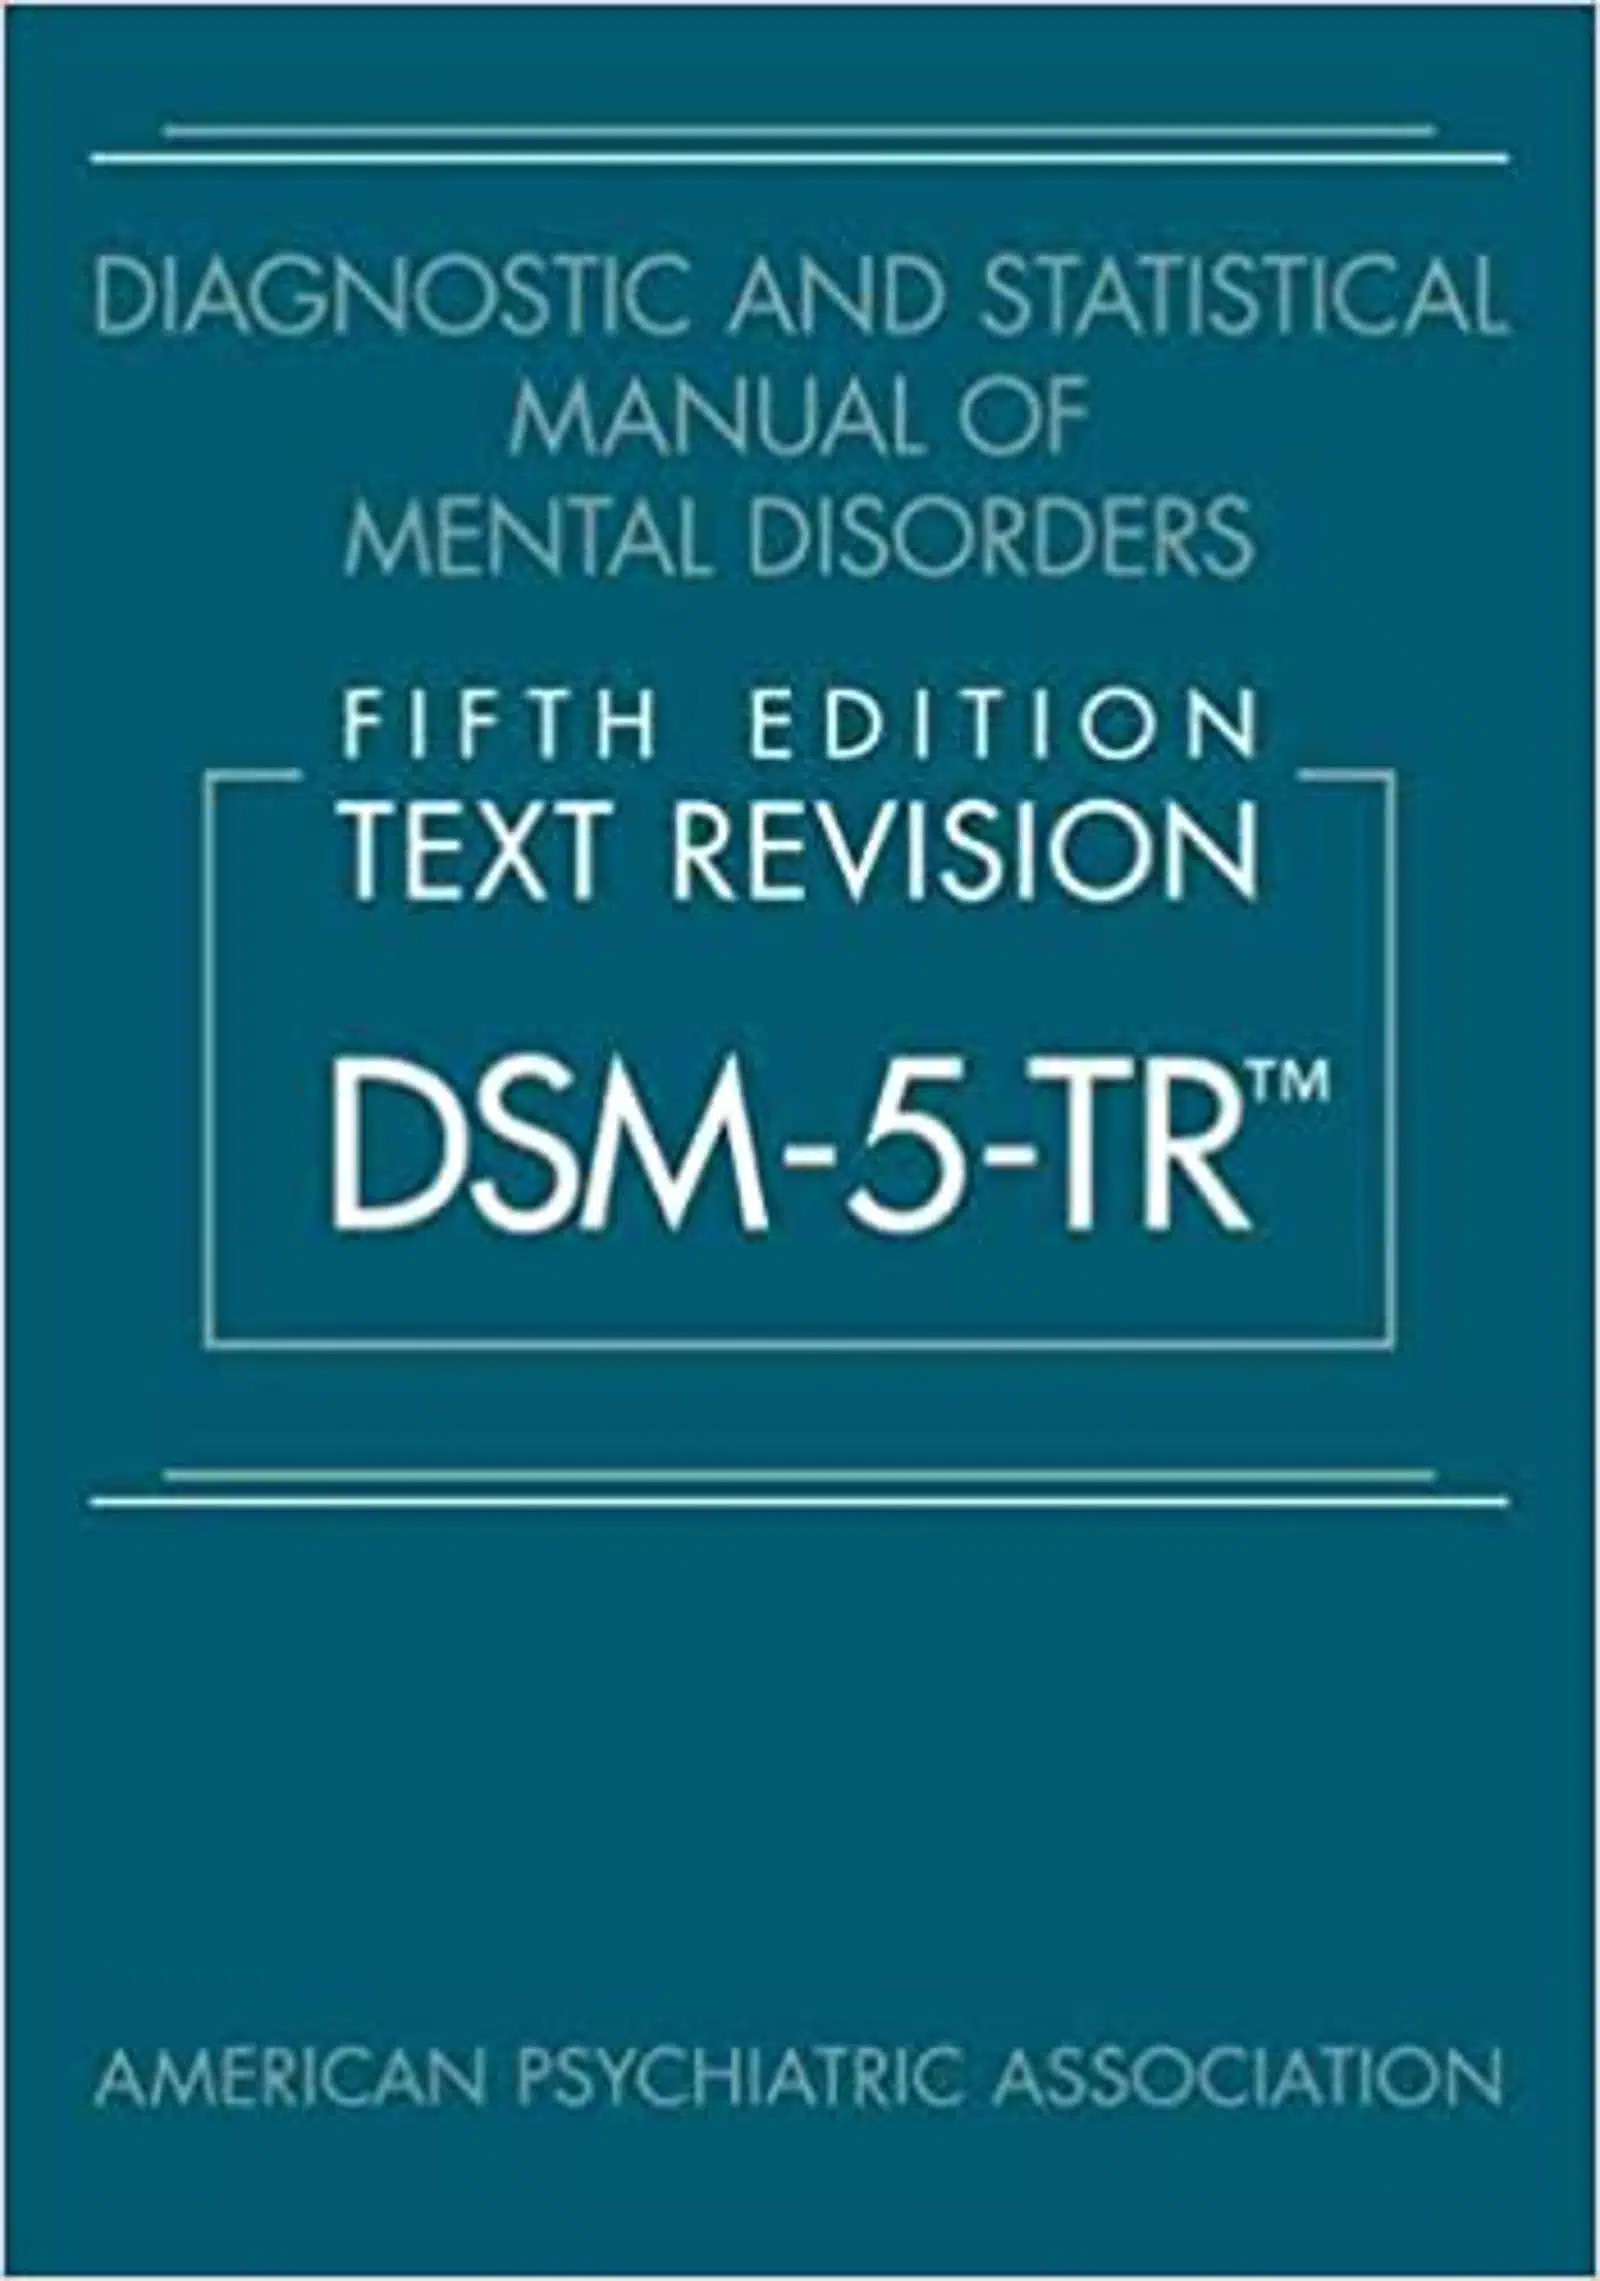 DSM 5 TR novita e cambiamenti nell ultima edizione del manuale Featured